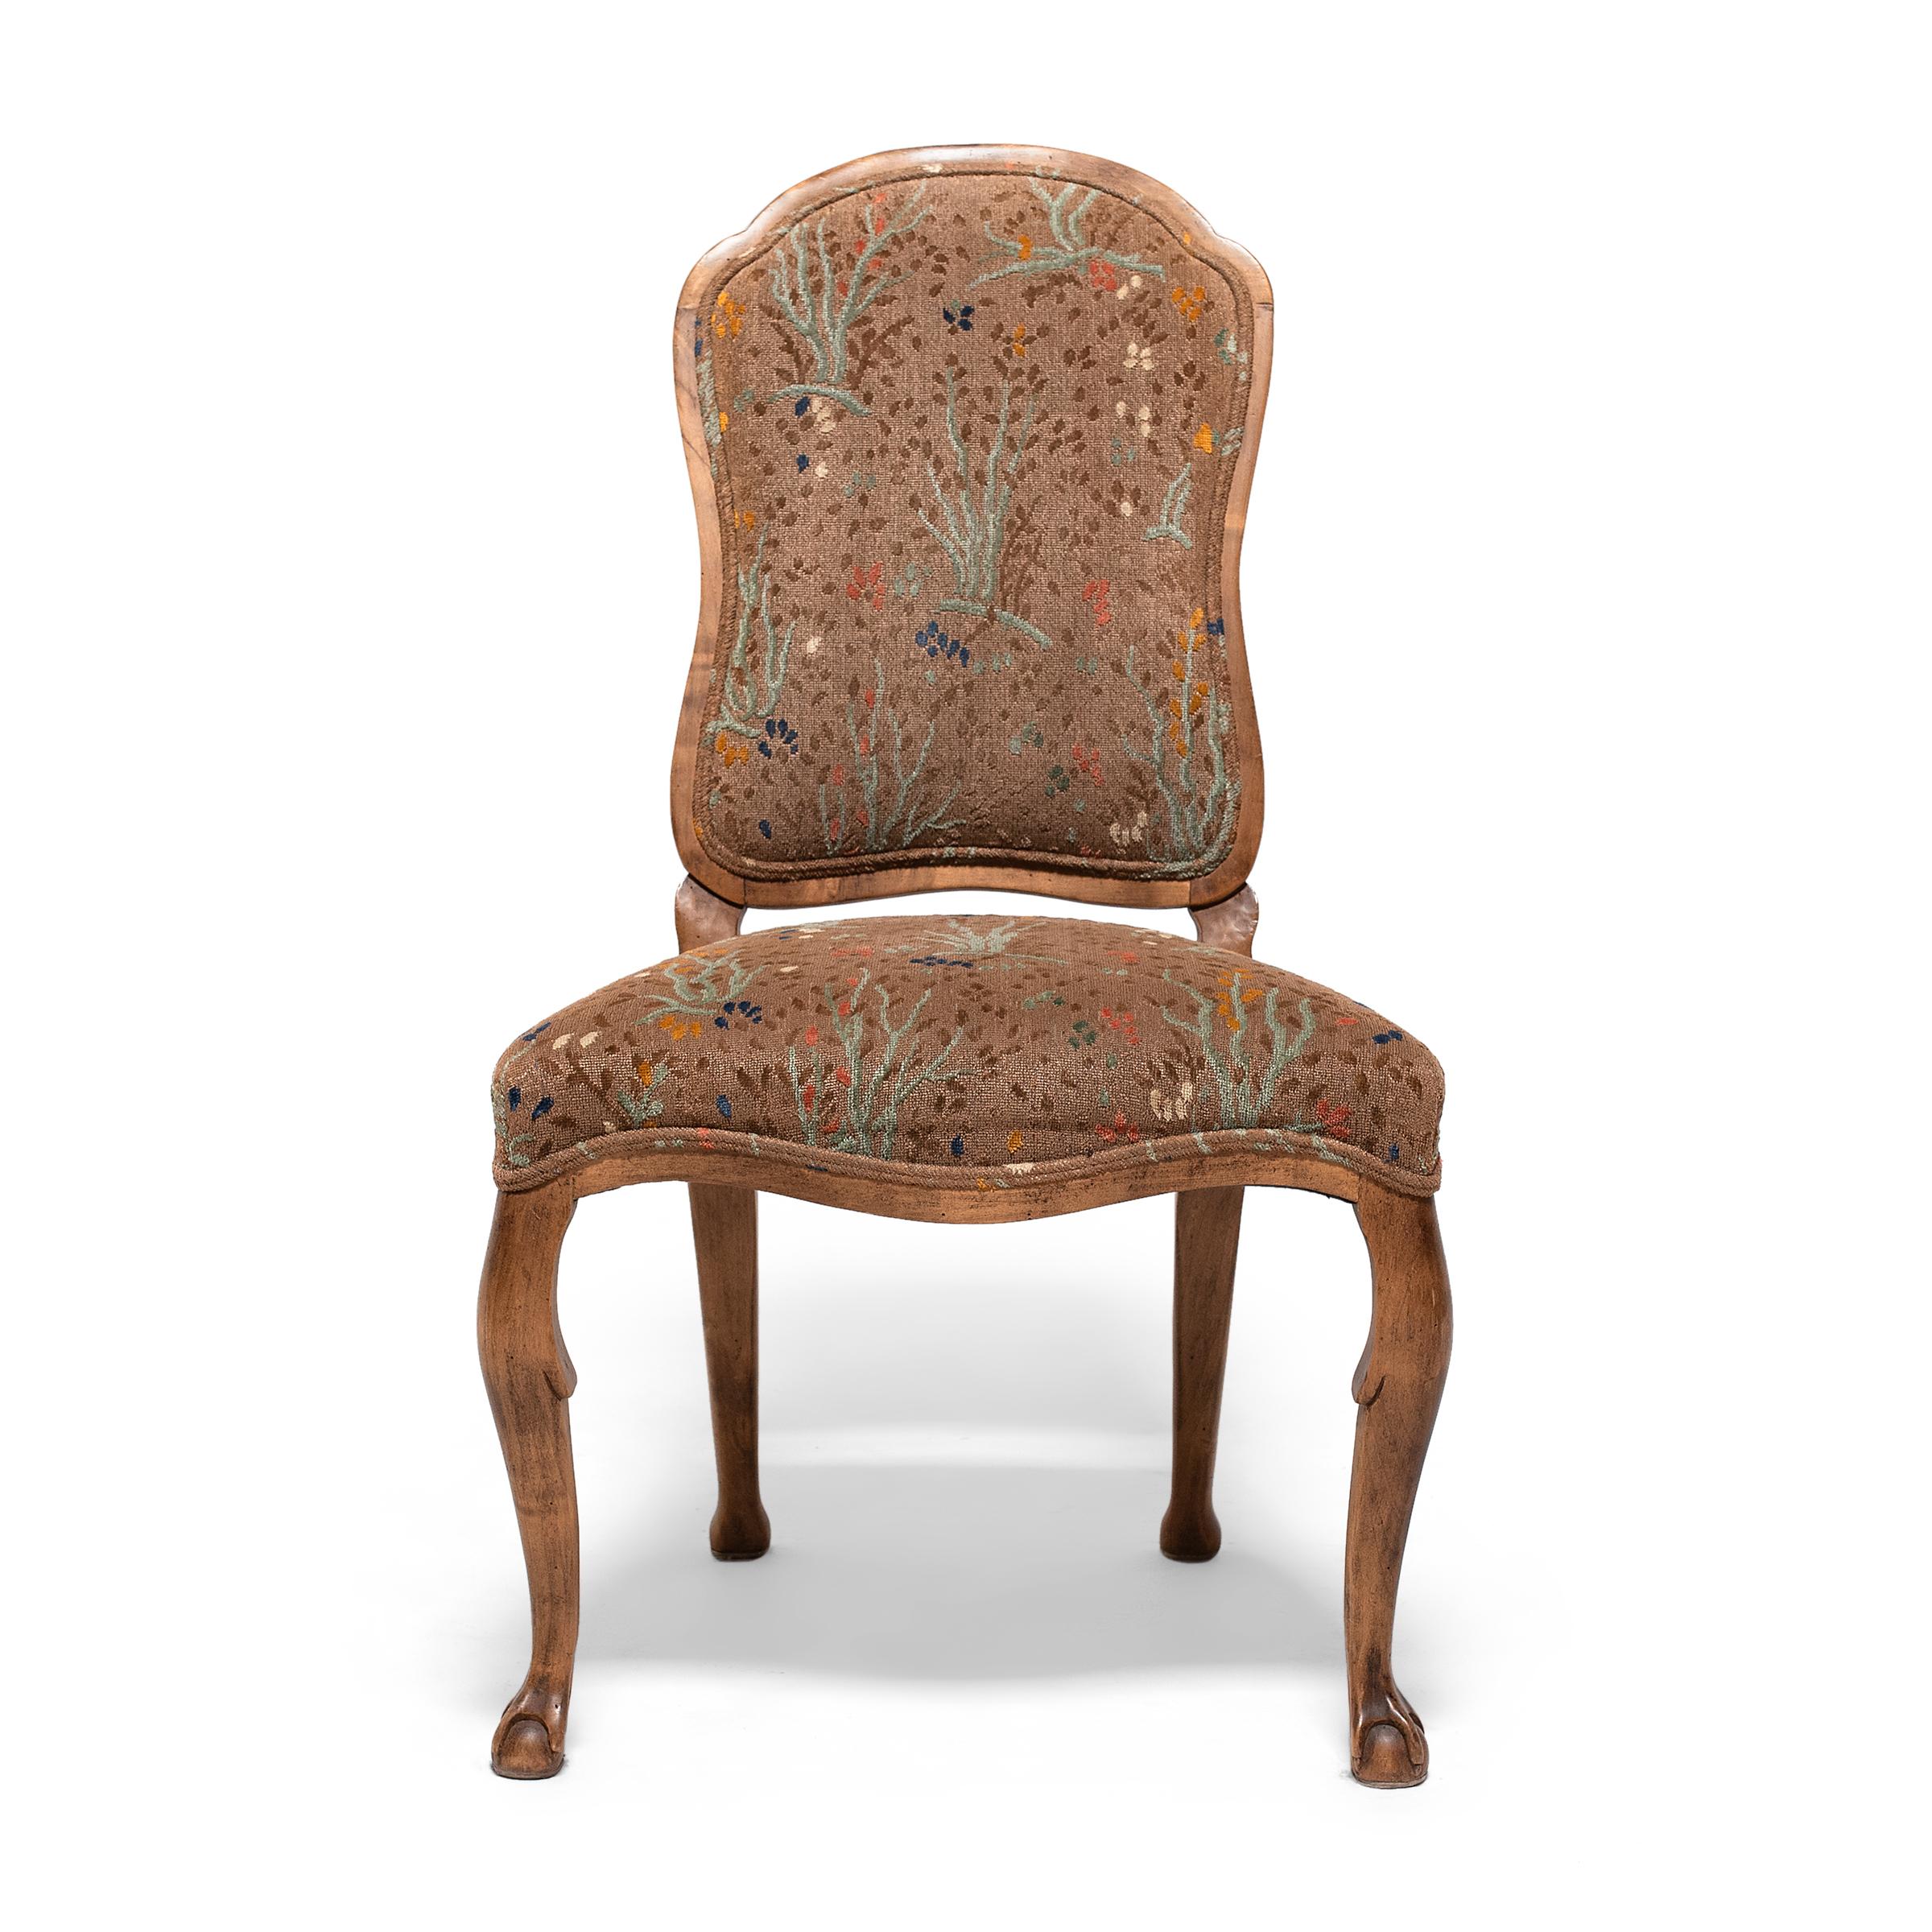 Cet ensemble de quatre chaises de salle à manger rembourrées recrée merveilleusement le style Louis XV avec des cadres sinueux en bois fruitier et aucune ligne droite en vue. Créée par Minton-Spidell, cette interprétation actualisée de la chaise